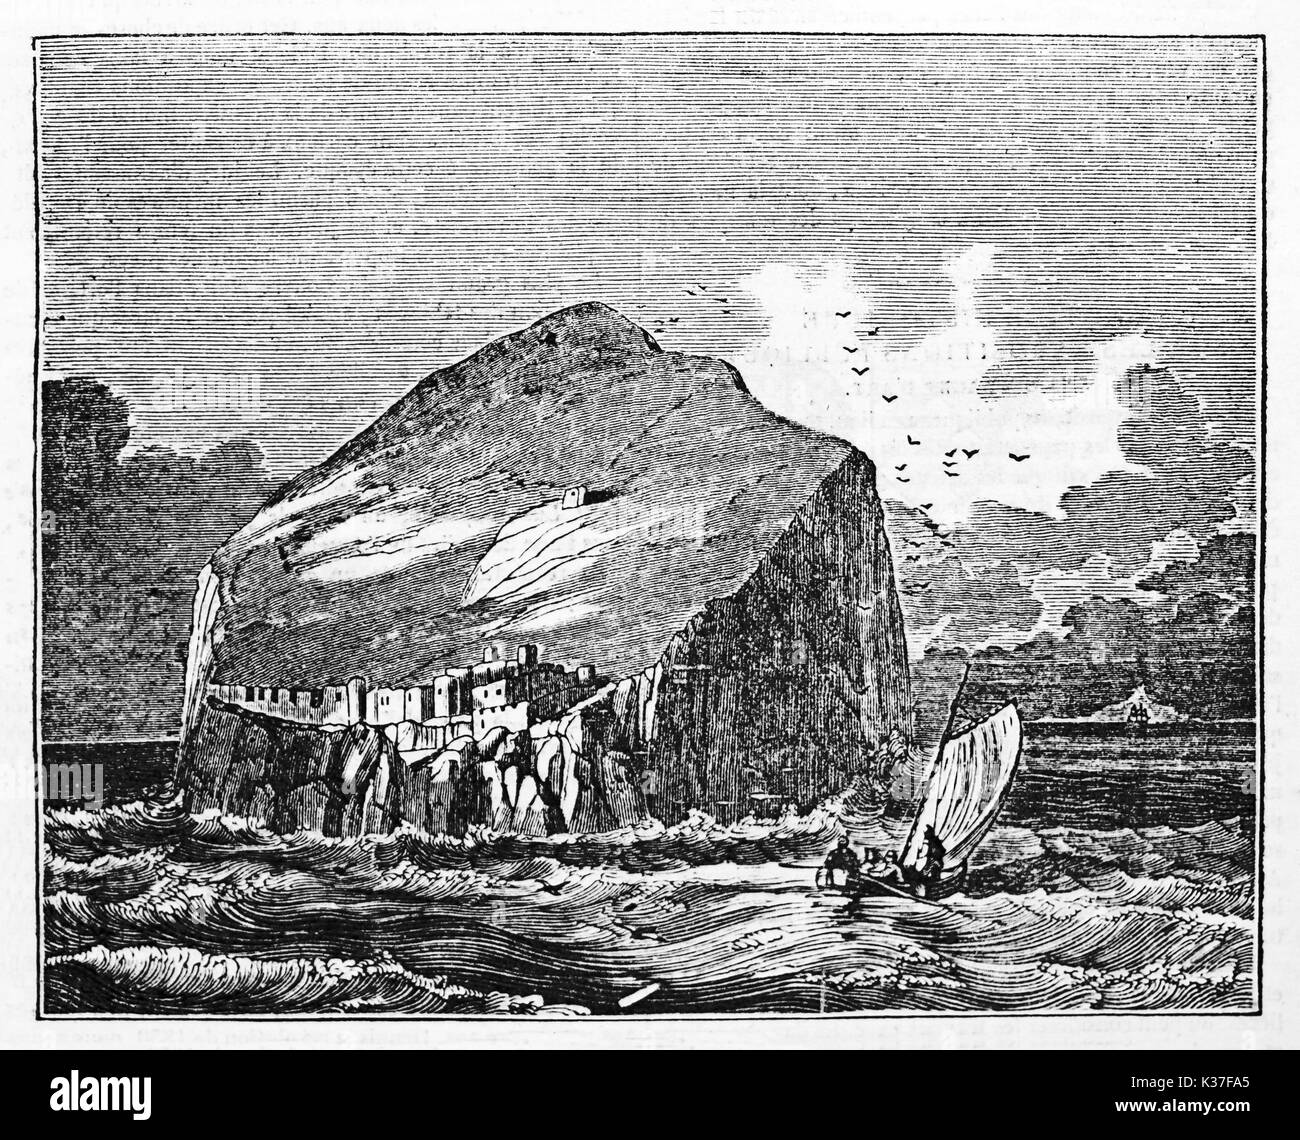 Alte Ansicht von einem Felsen in der Mitte der rauen See, ein wenig kleinen mittelalterlichen Stadt, Bass Rock schottische Insel. Alte Illustration von unbekannter Autor auf Magasin Pittoresque Paris 1834 veröffentlicht. Stockfoto